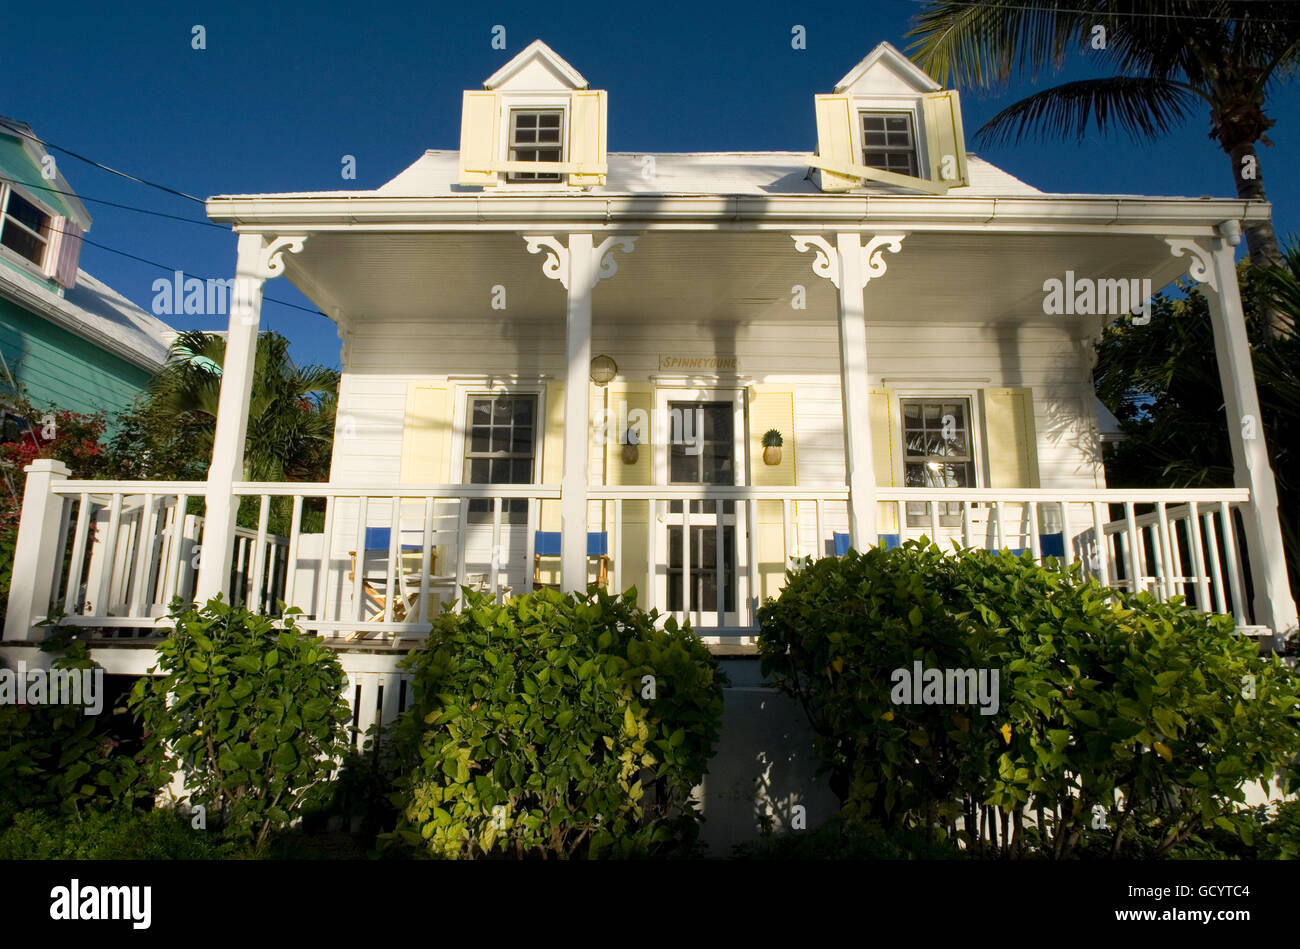 Tipica casa lealisti, speranza comune, gomito Cay, Abacos. Bahamas Foto Stock